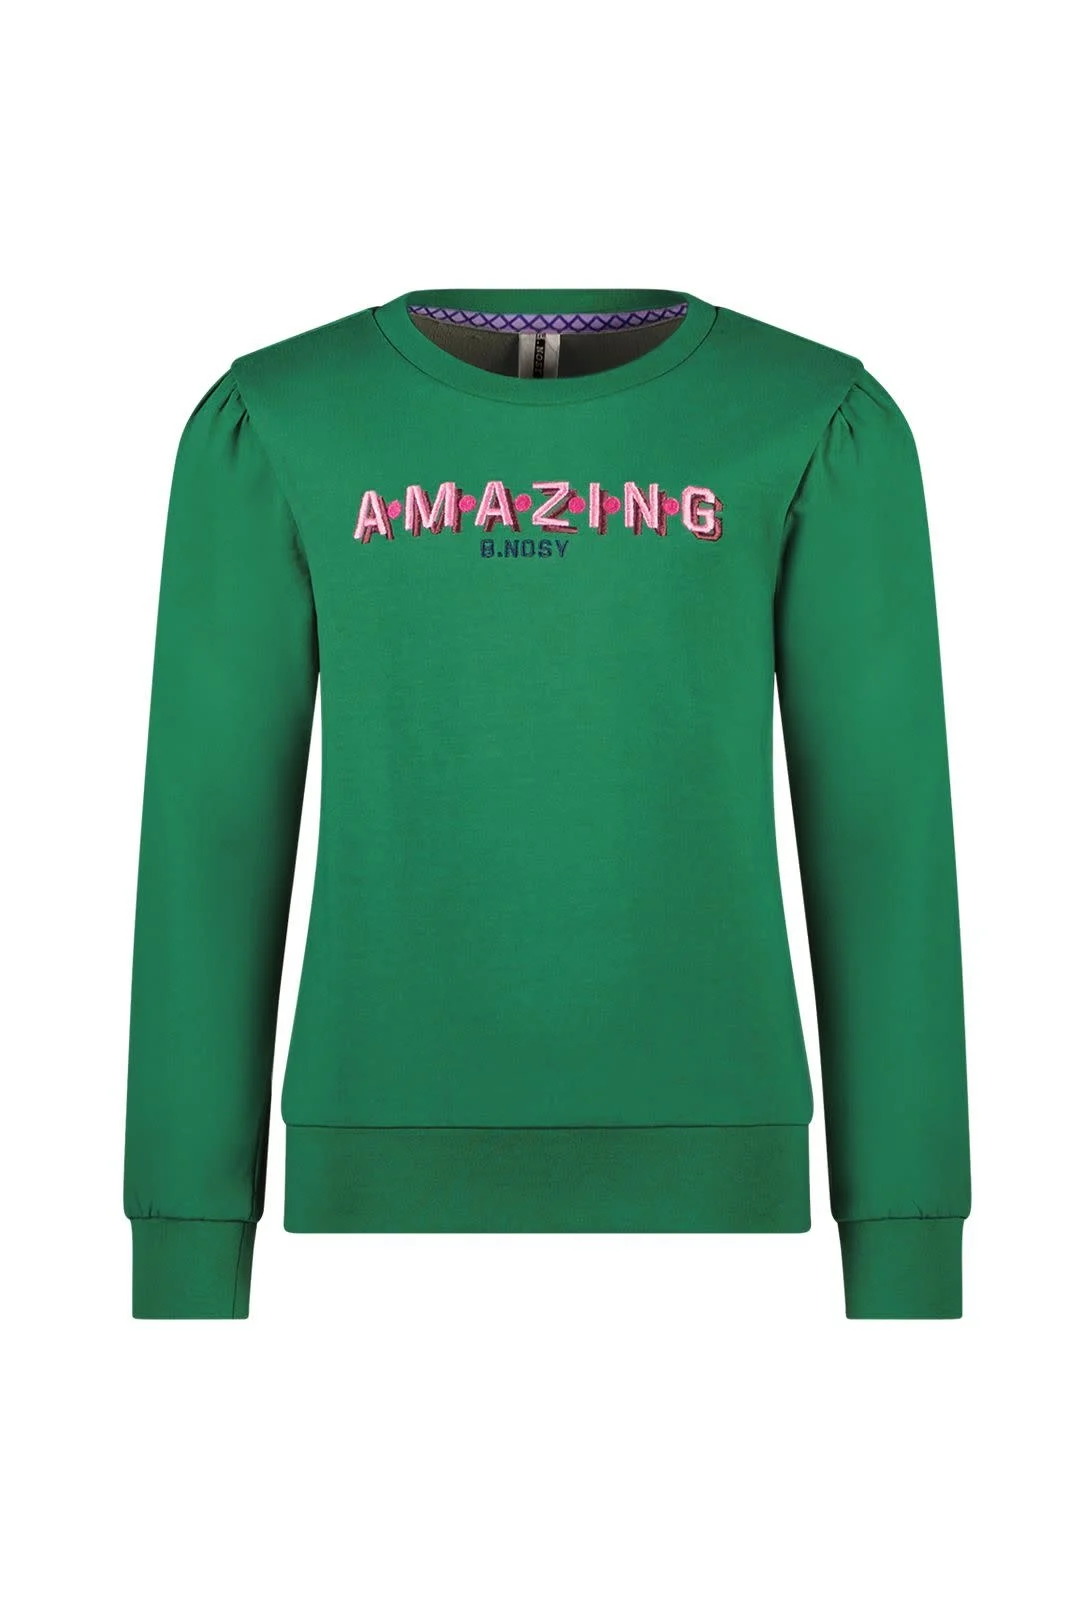 Afbeelding van B.Nosy Meisjes sweater elise emerald